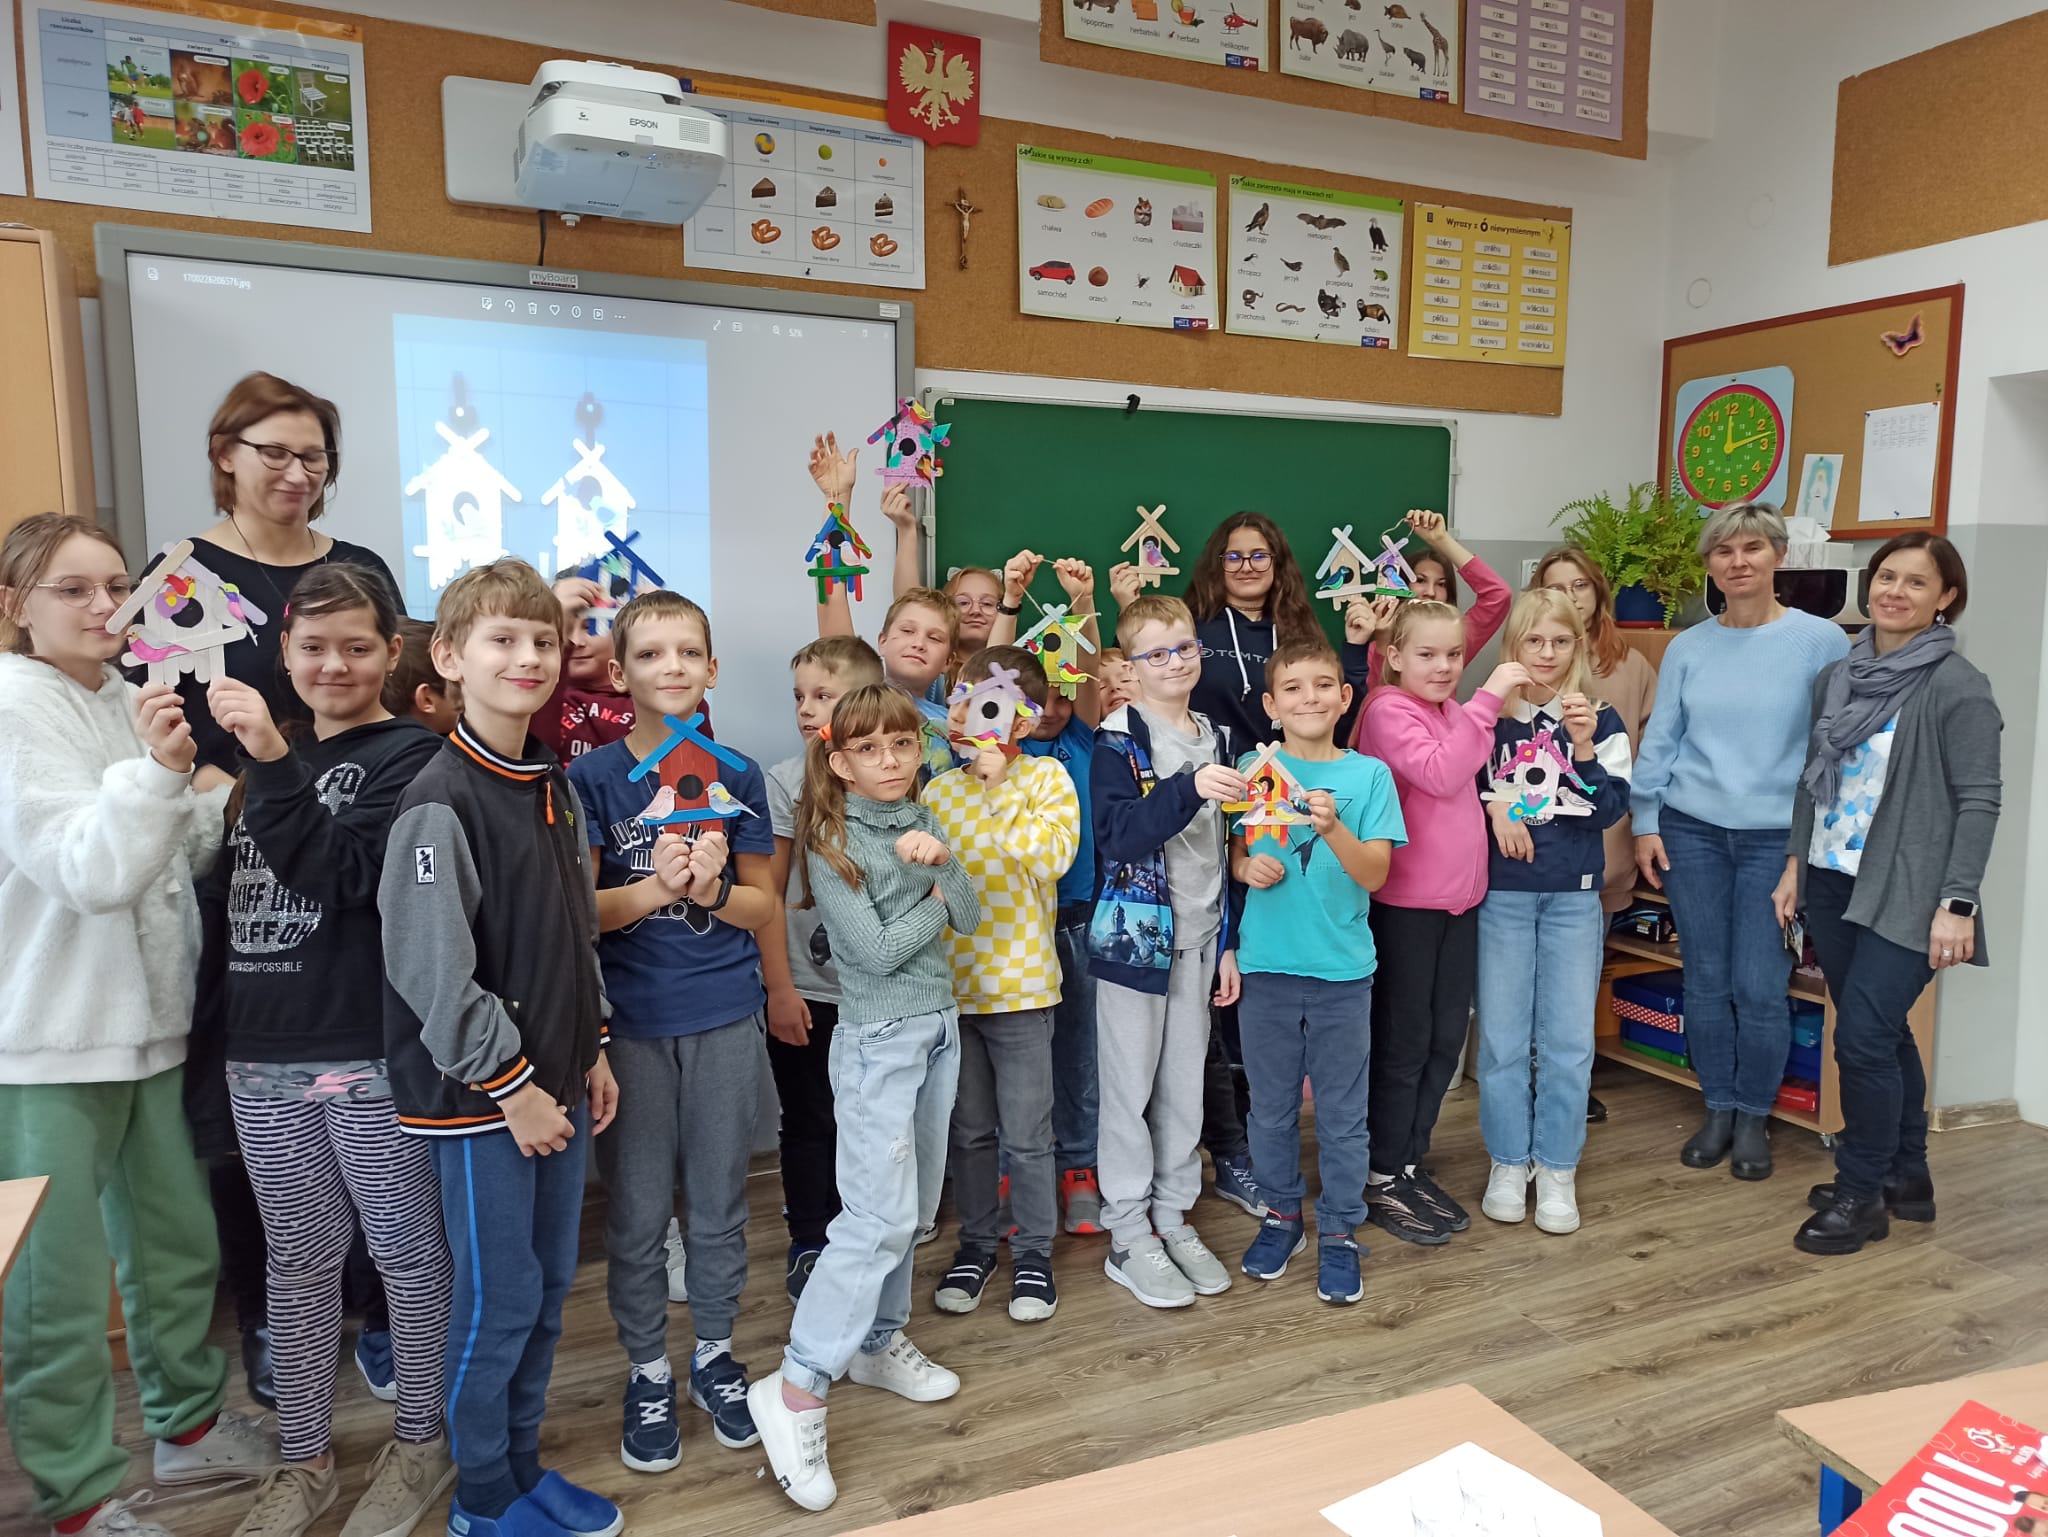 Zdjęcie wykonane w sali lekcyjnej edukacji wczesnoszkolnej, na zdjęciu pod ścianą stoi grupa uczniów z klasy 3b wraz z gośćmi ze Słowenii